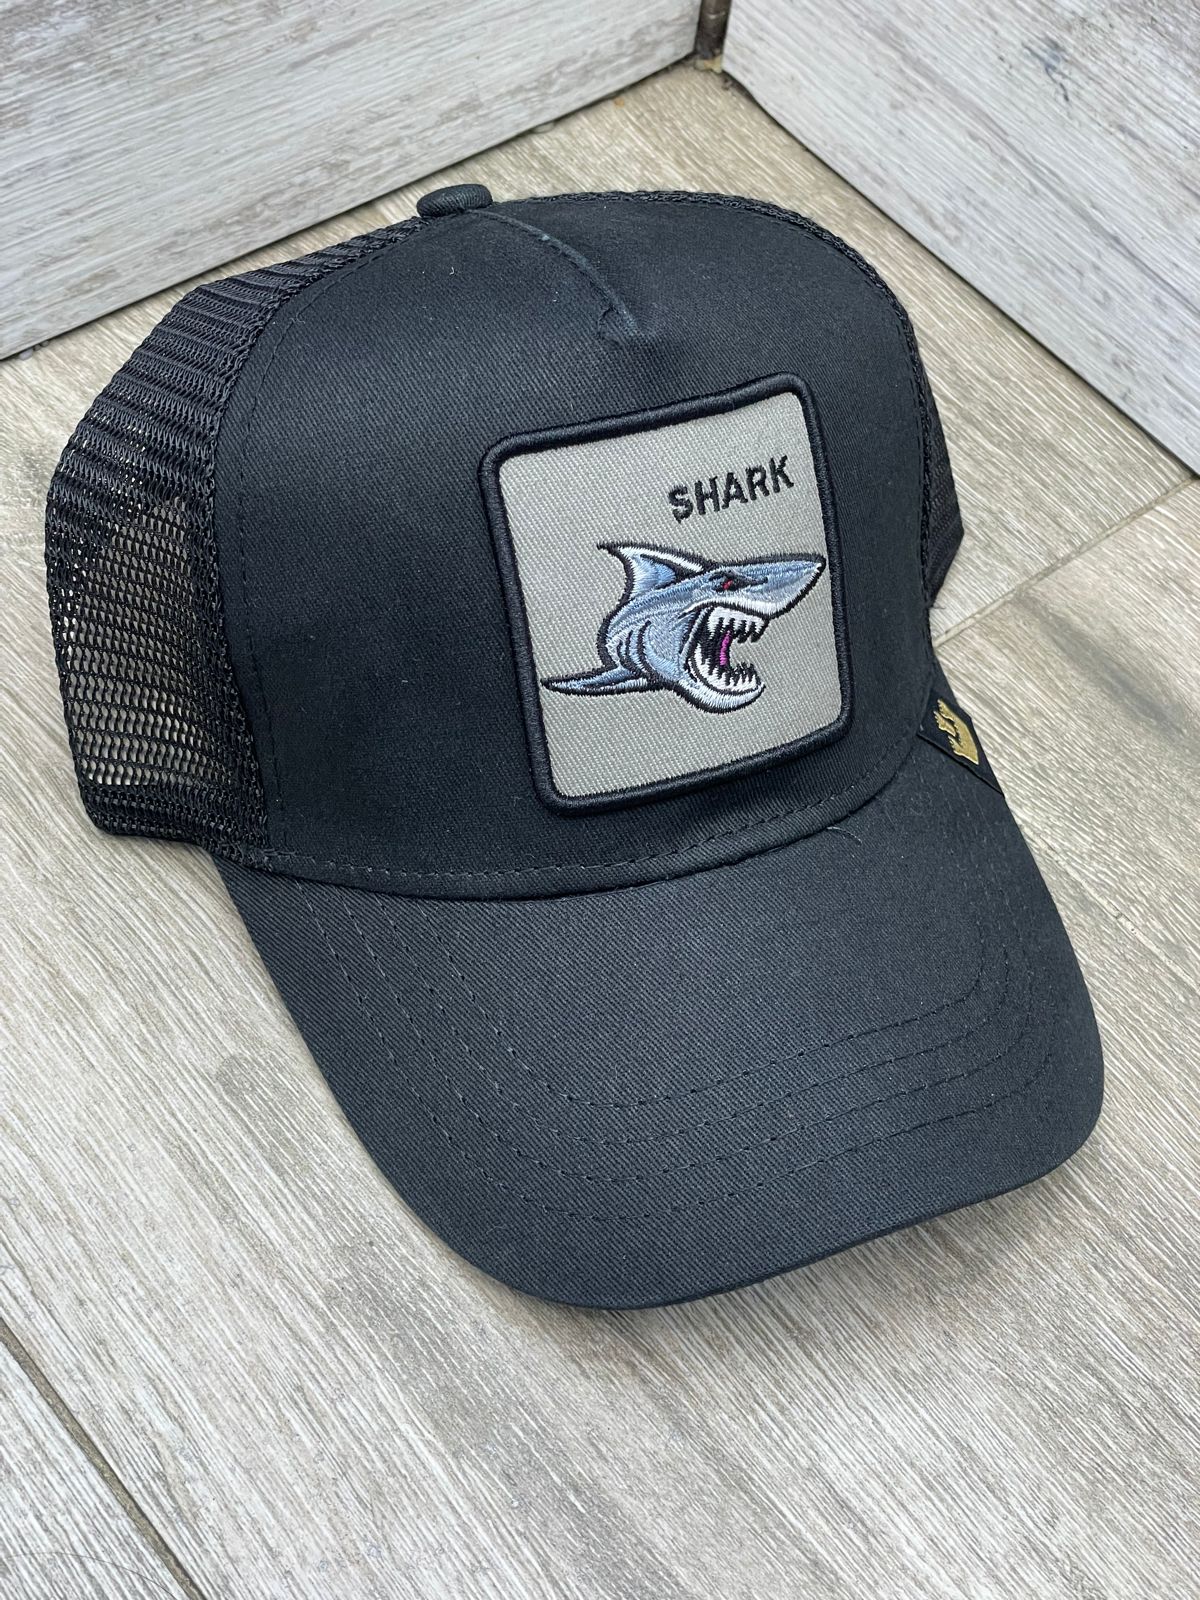 Goorin Bross negra malla Shark